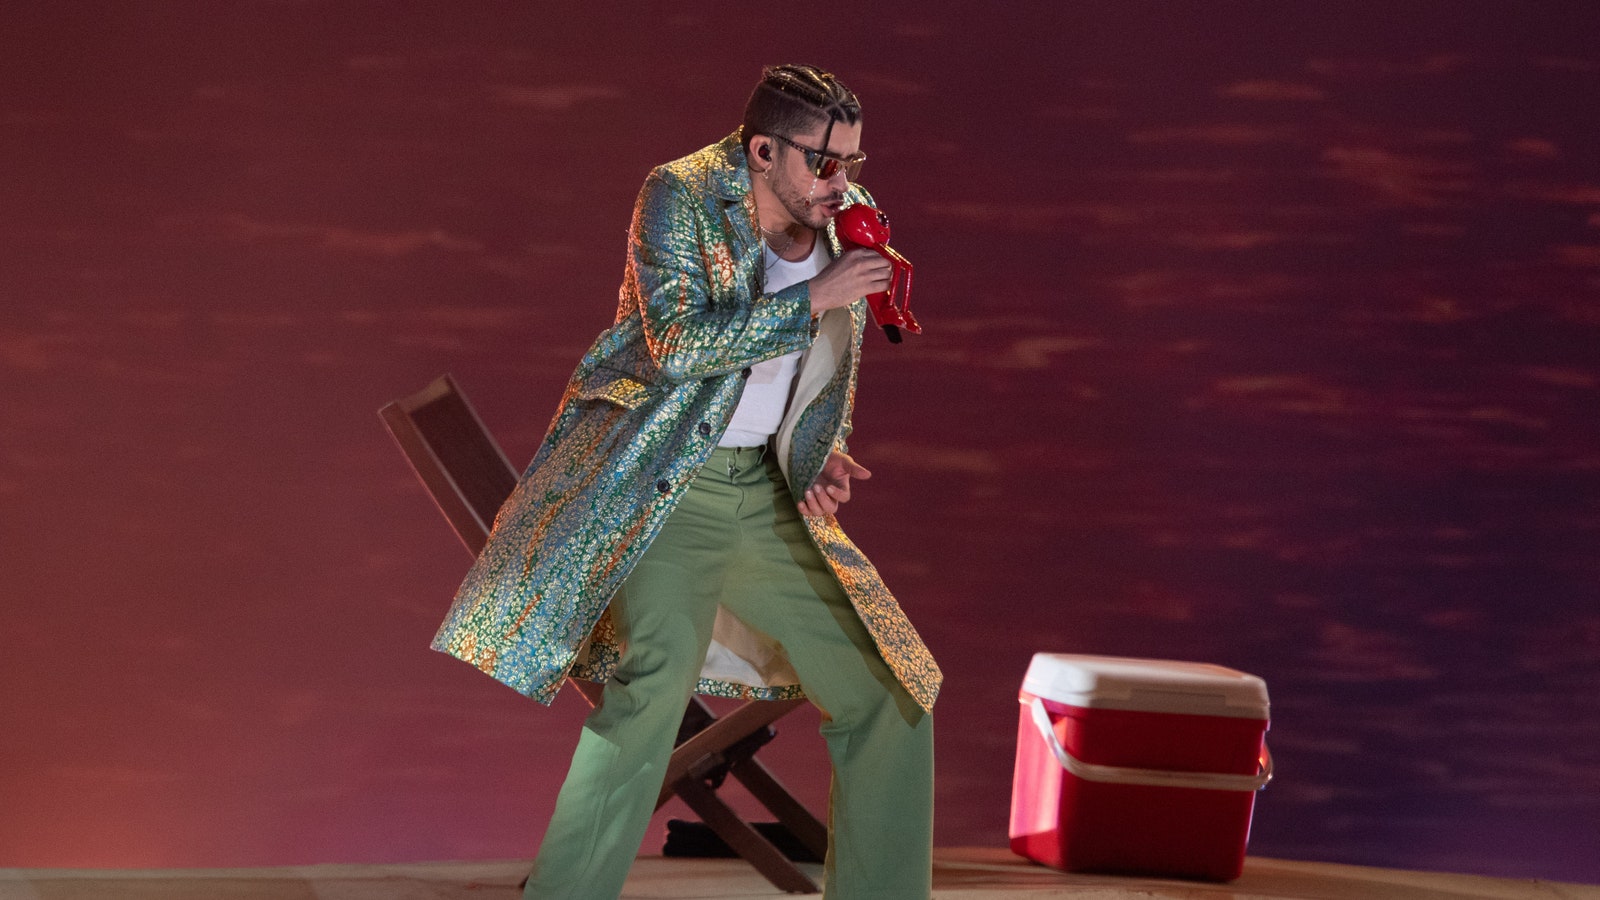 Bad Bunny viste abrigo y pantalón verde en concierto